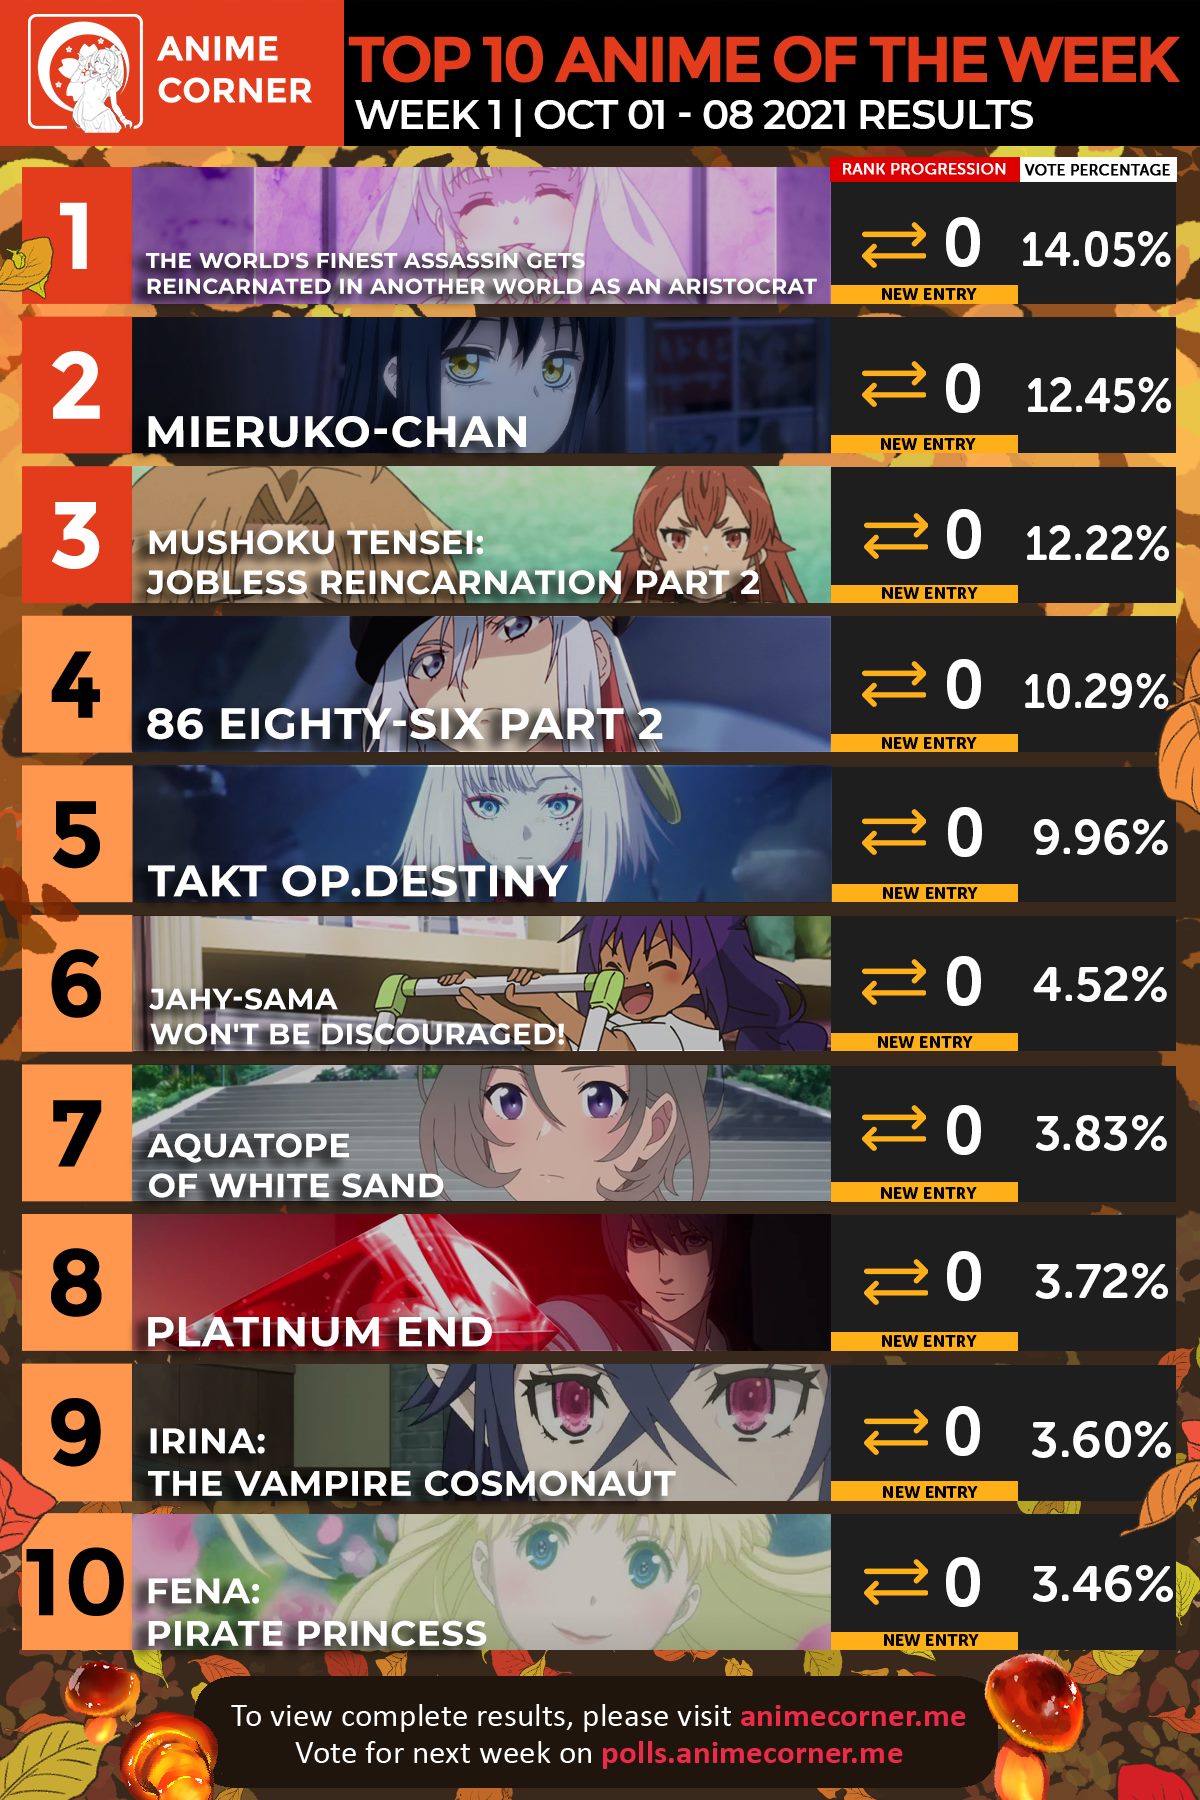 Bảng xếp hạng Anime mùa thu là thông tin rất đáng quan tâm cho những ai yêu thích anime. Hãy xem hình ảnh liên quan để cập nhật những bộ anime đang được đánh giá cao nhất trong mùa thu này.